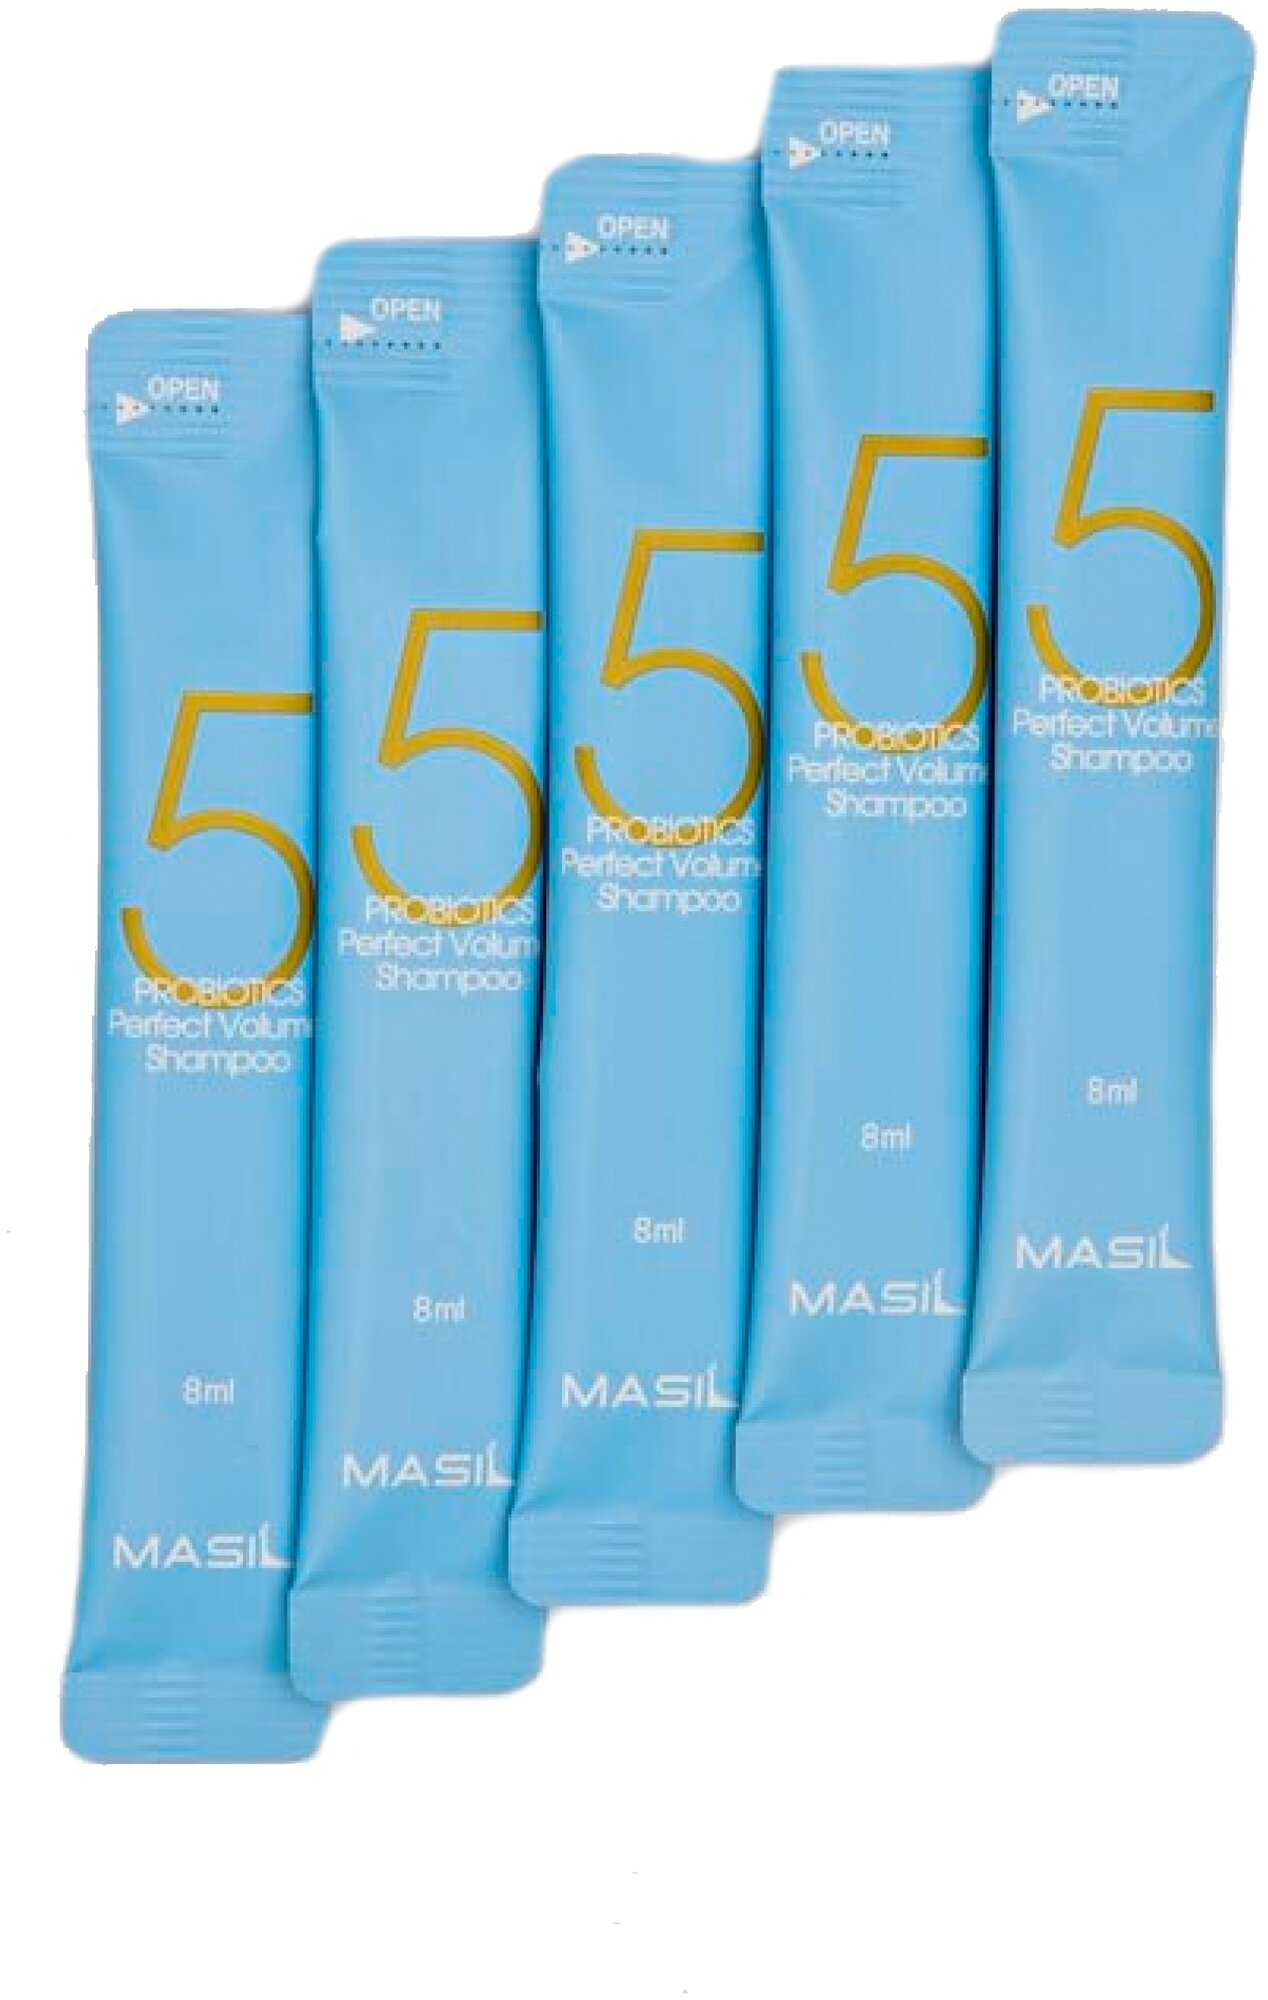 Masil Набор шампуней для объема волос с пробиотиками Masil 5 Probiotics Perfect Volume Shampoo 8ml (5 саше по 8 мл.)